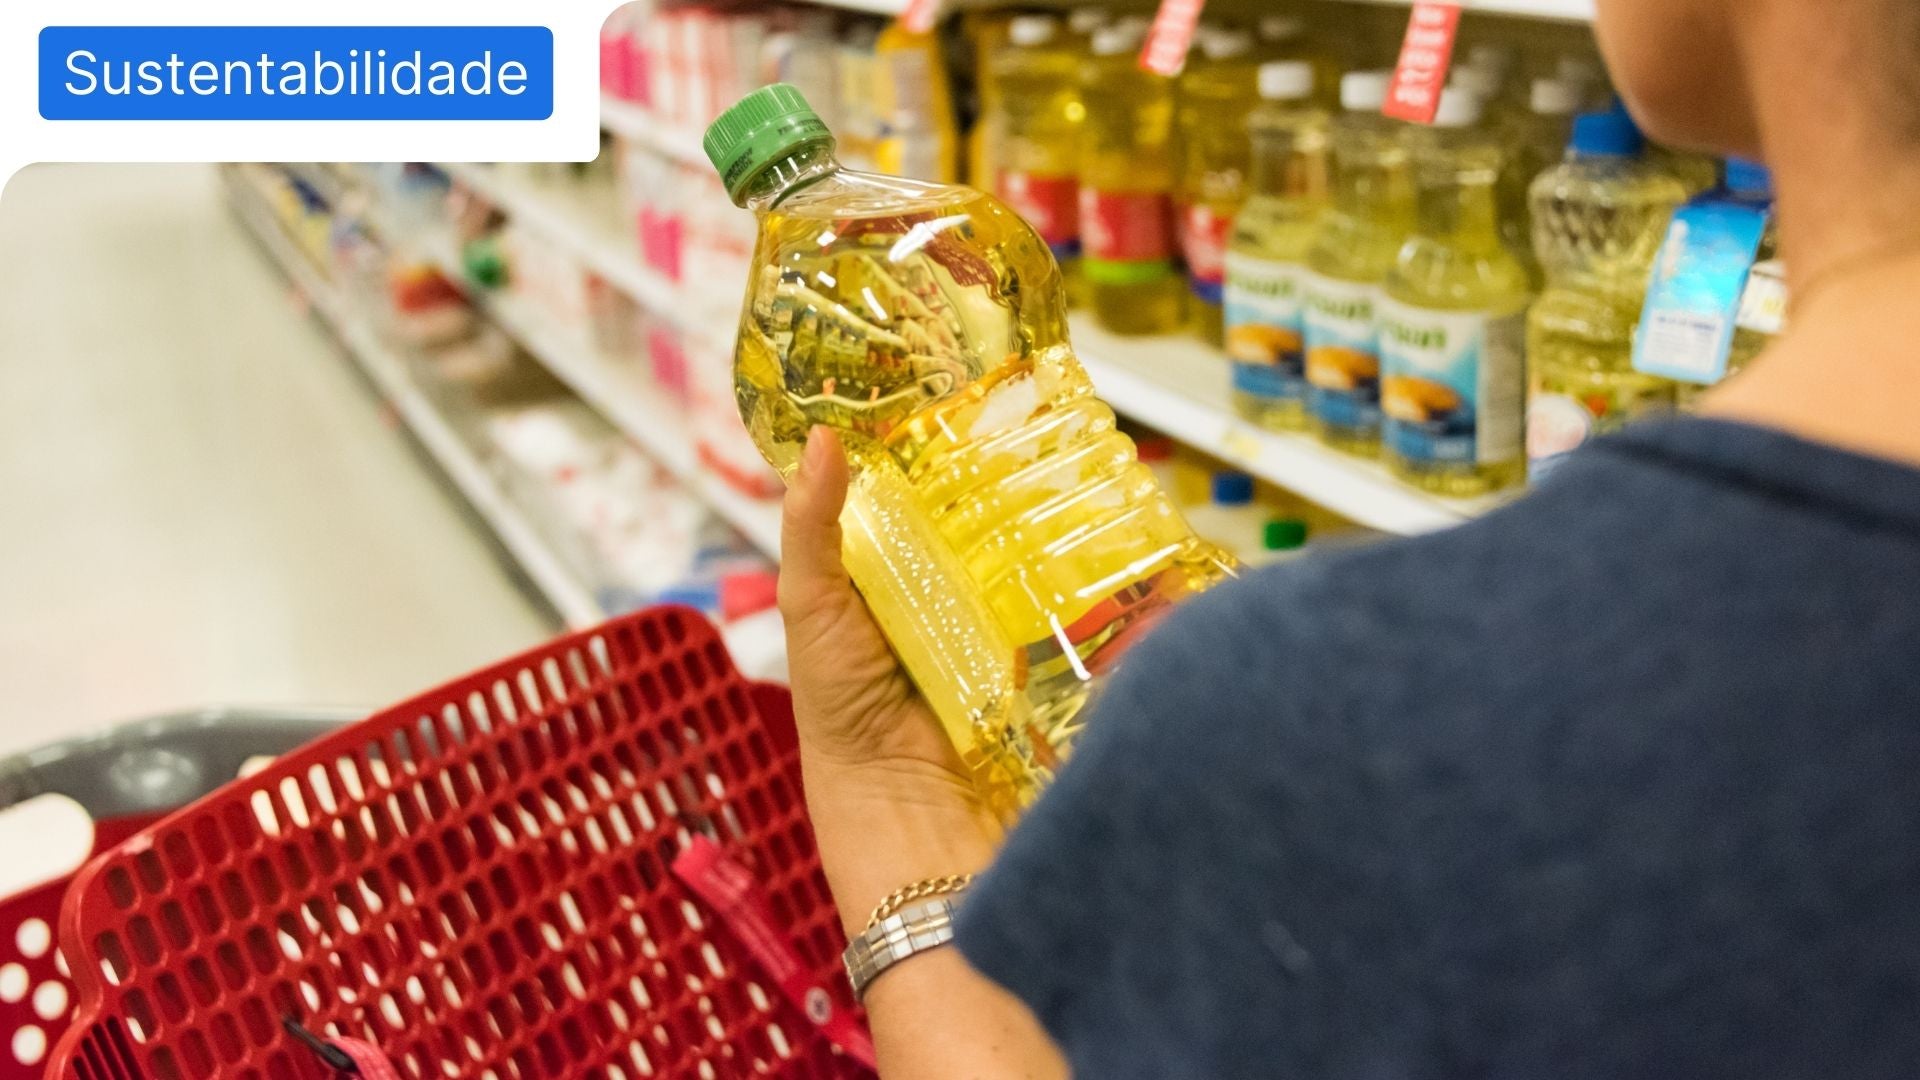 Pessoa a agarrar numa garrafa de óleo usado, no corredor de supermercado dos óleos alimentares usados